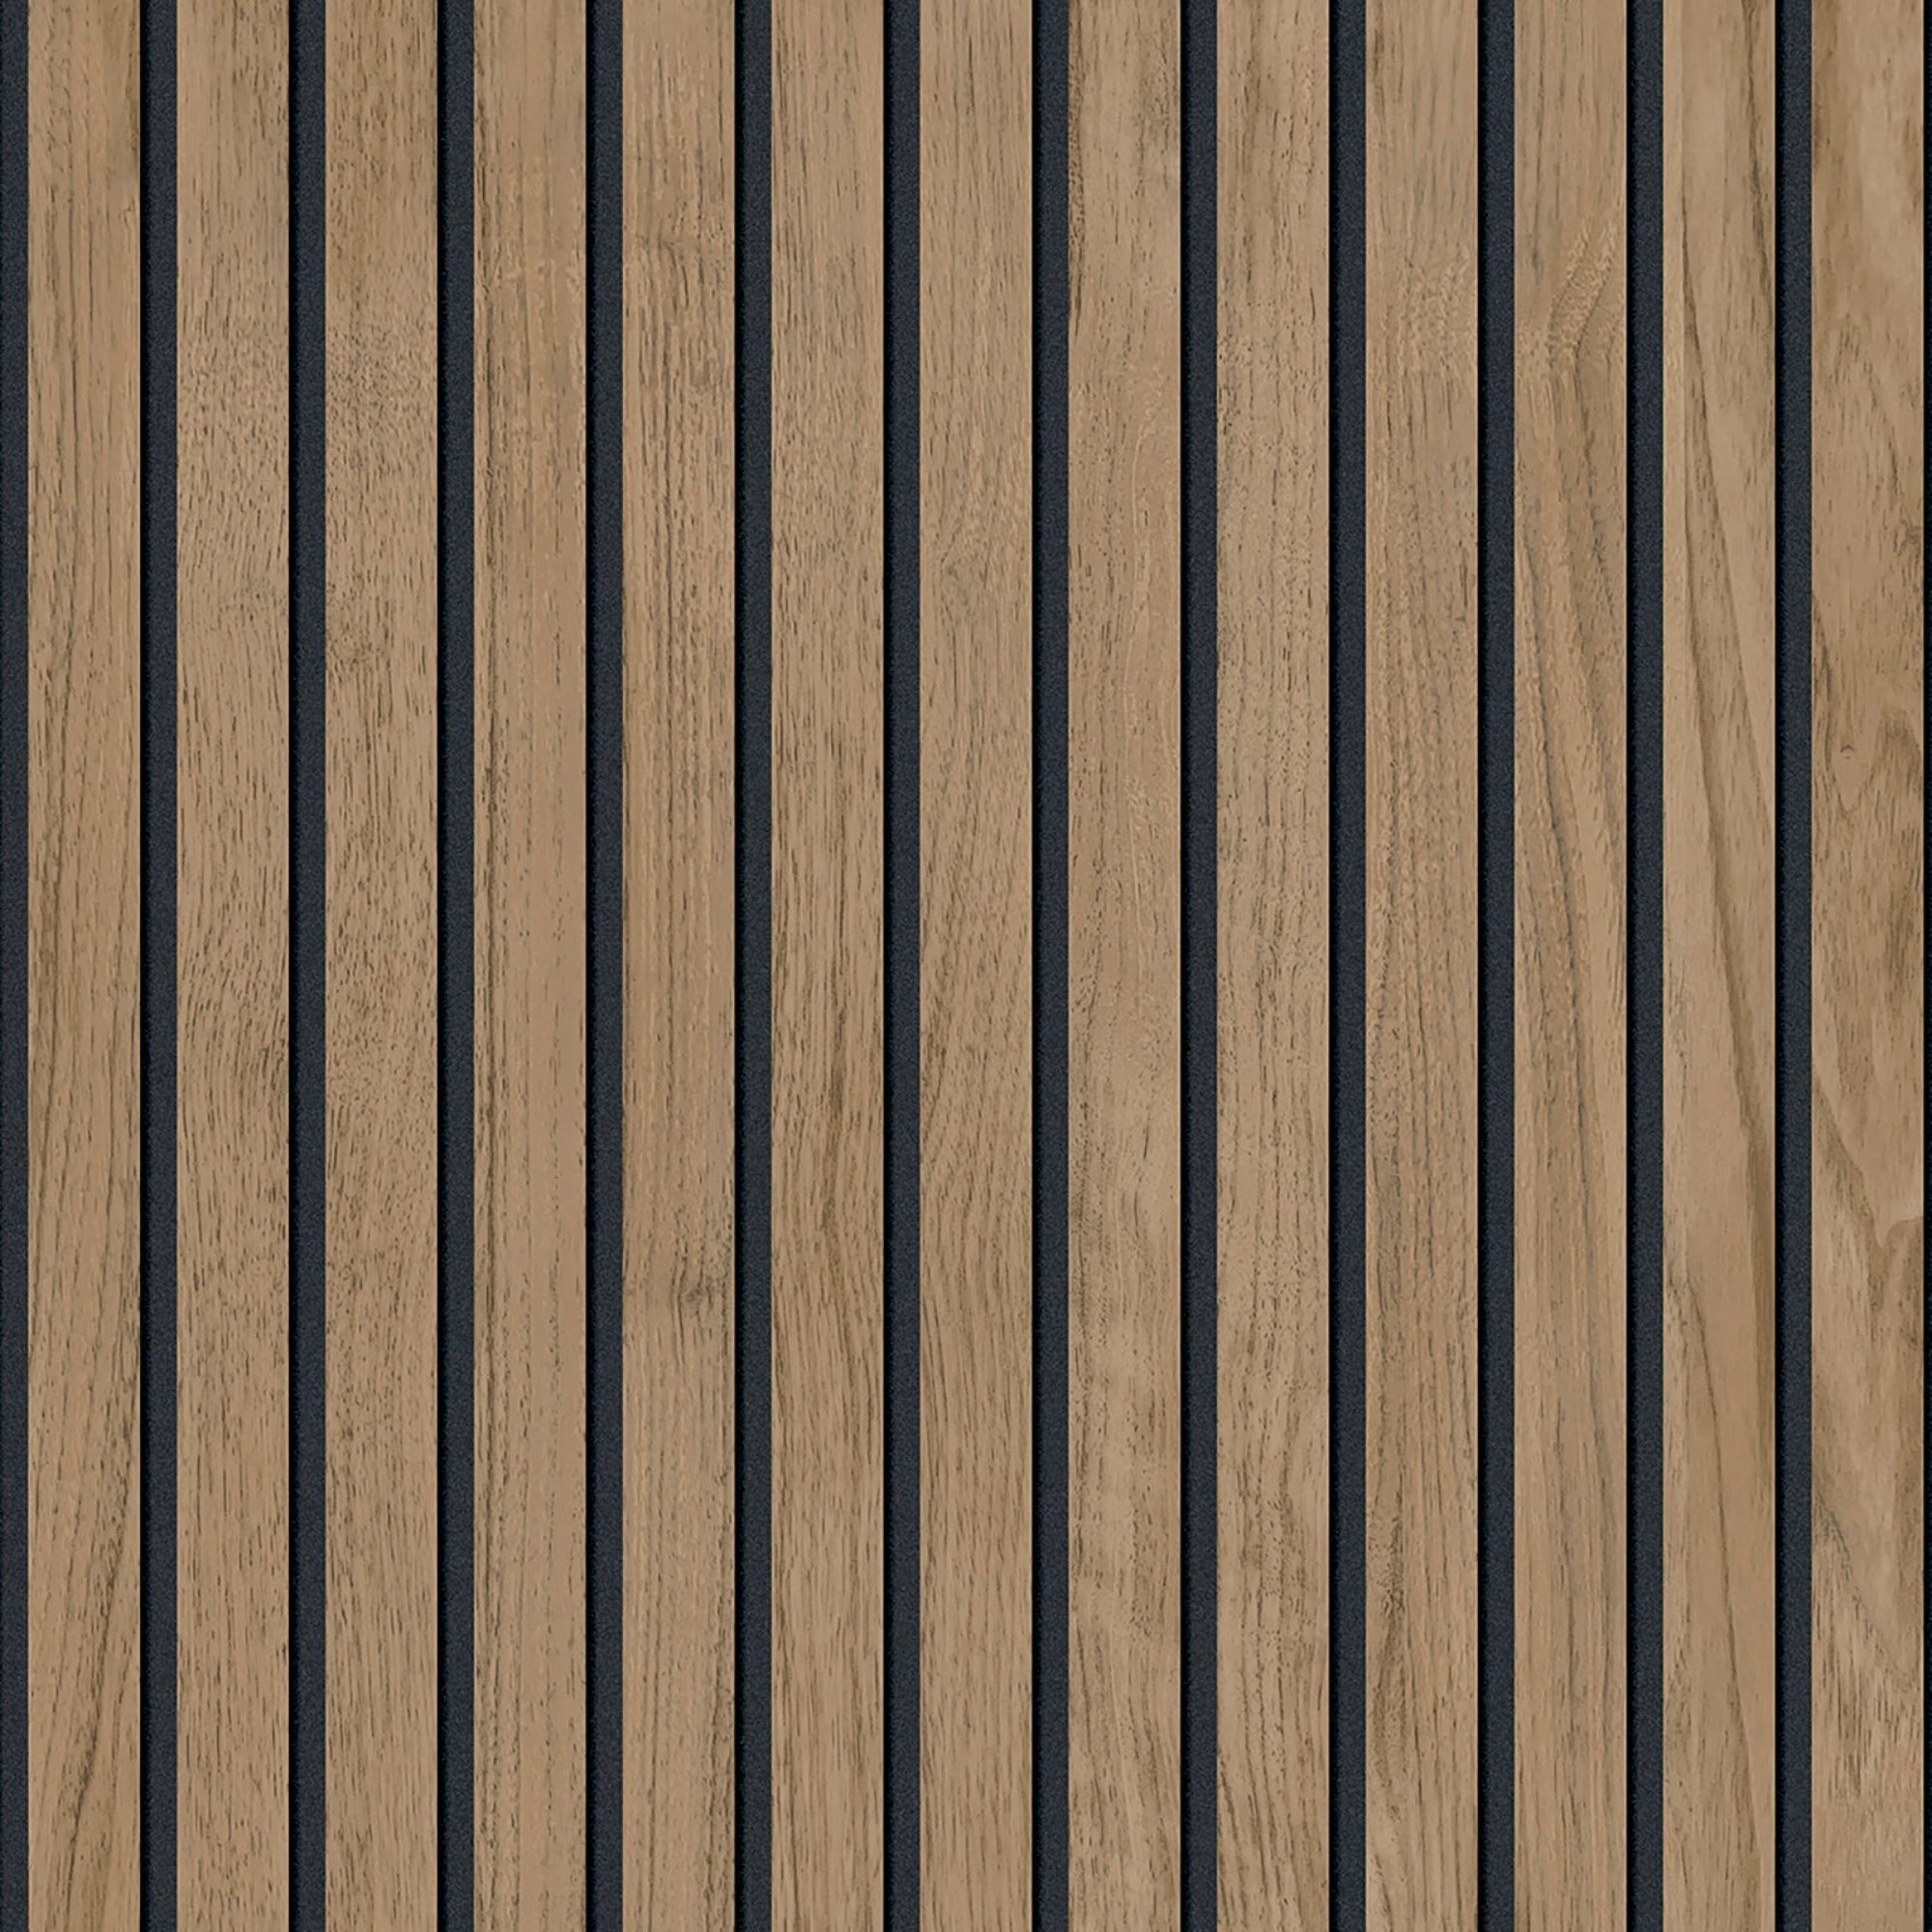 Panacea Wood Walnut Wallpaper | WonderWall by Nobletts